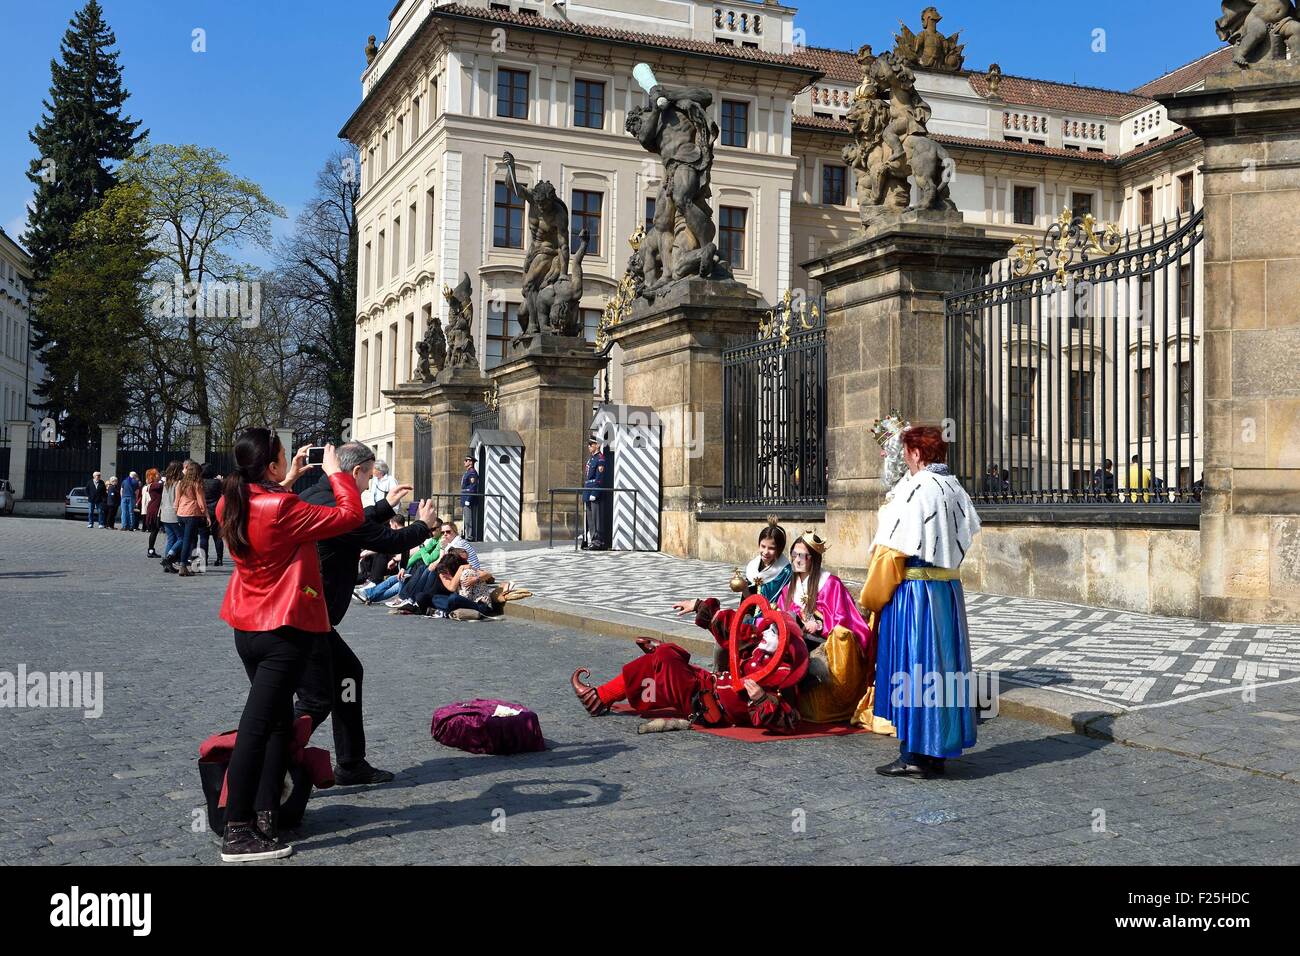 Repubblica Ceca, Praga, Hradcany (Quartiere del Castello), il castello reale entrata principale, i turisti fotografare in costume Foto Stock